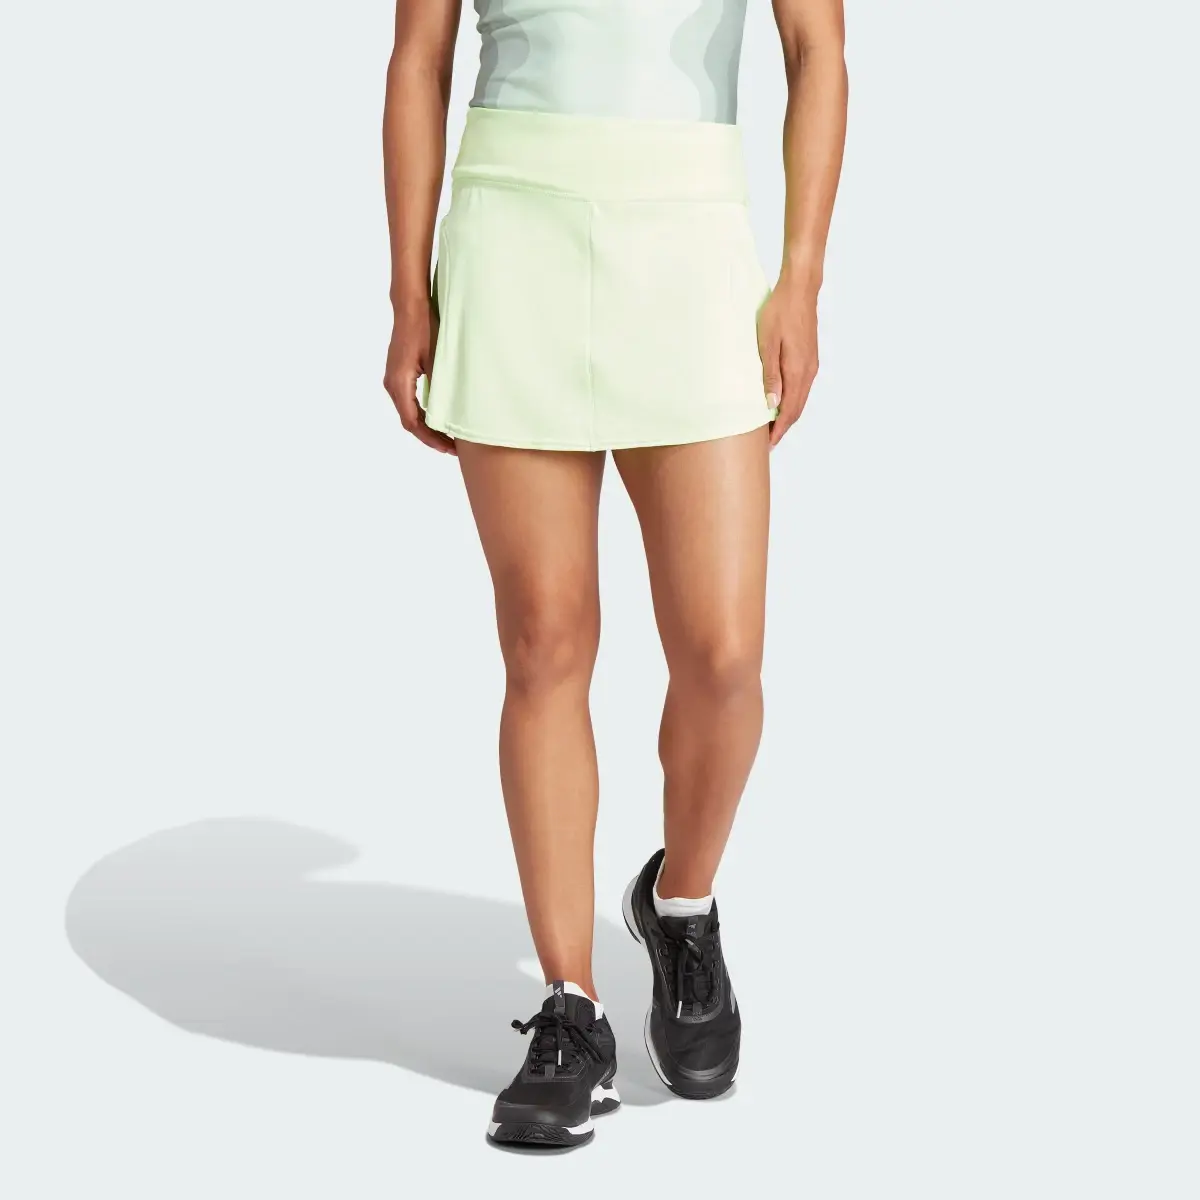 Adidas Tennis Match Skirt. 1